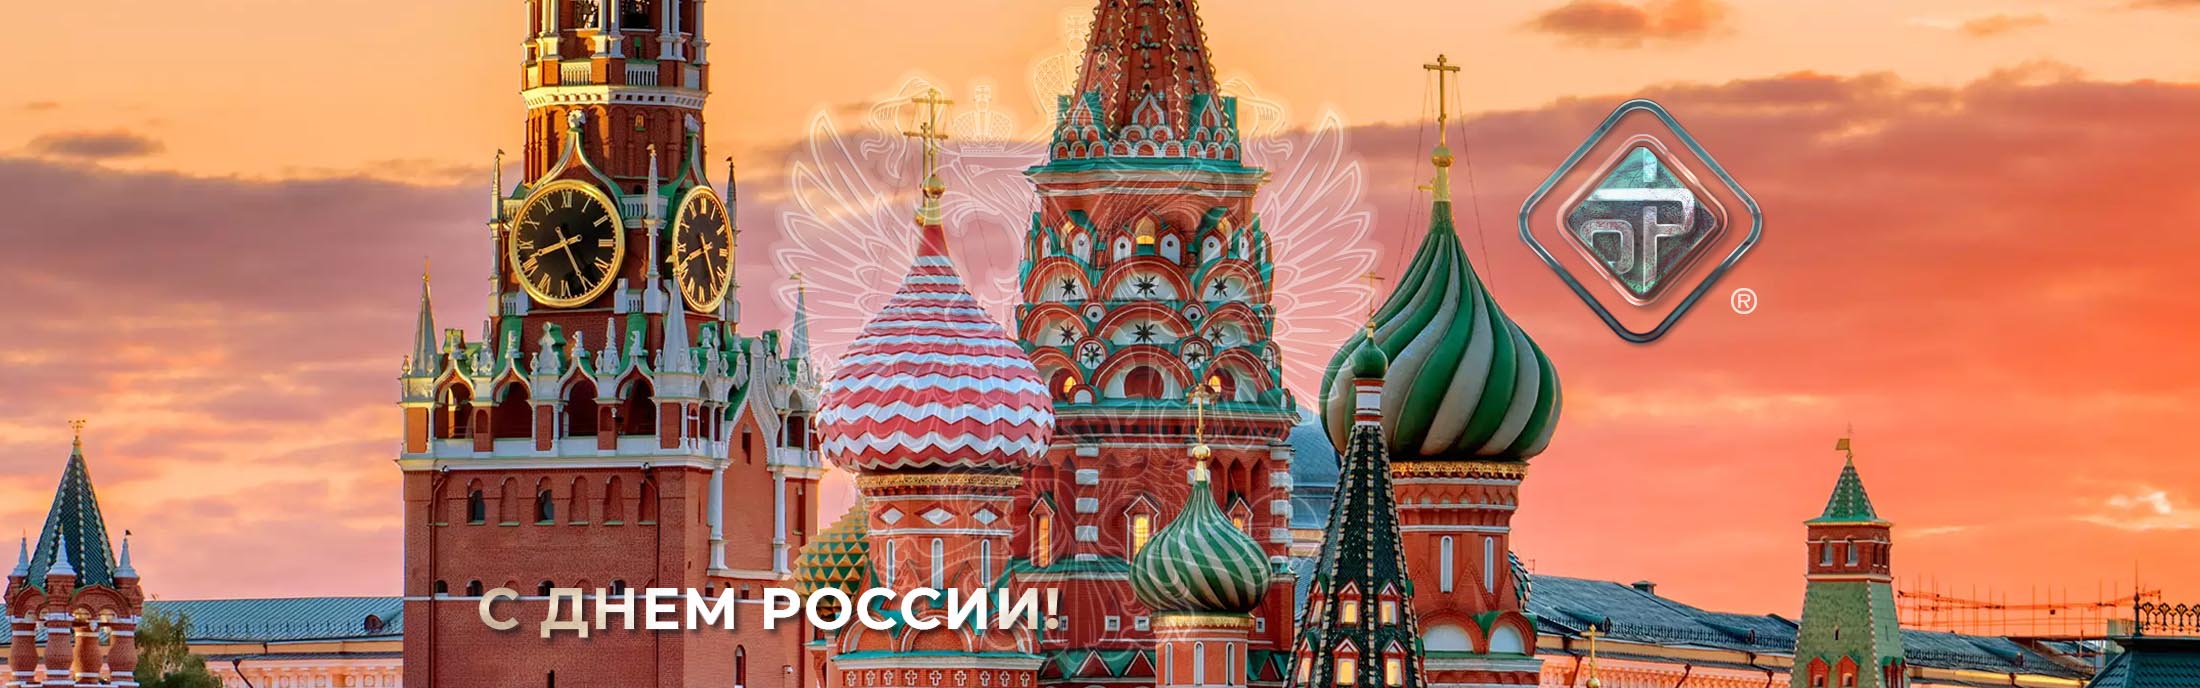 Дорогие друзья! Наша компания поздравляет вас с Днем России